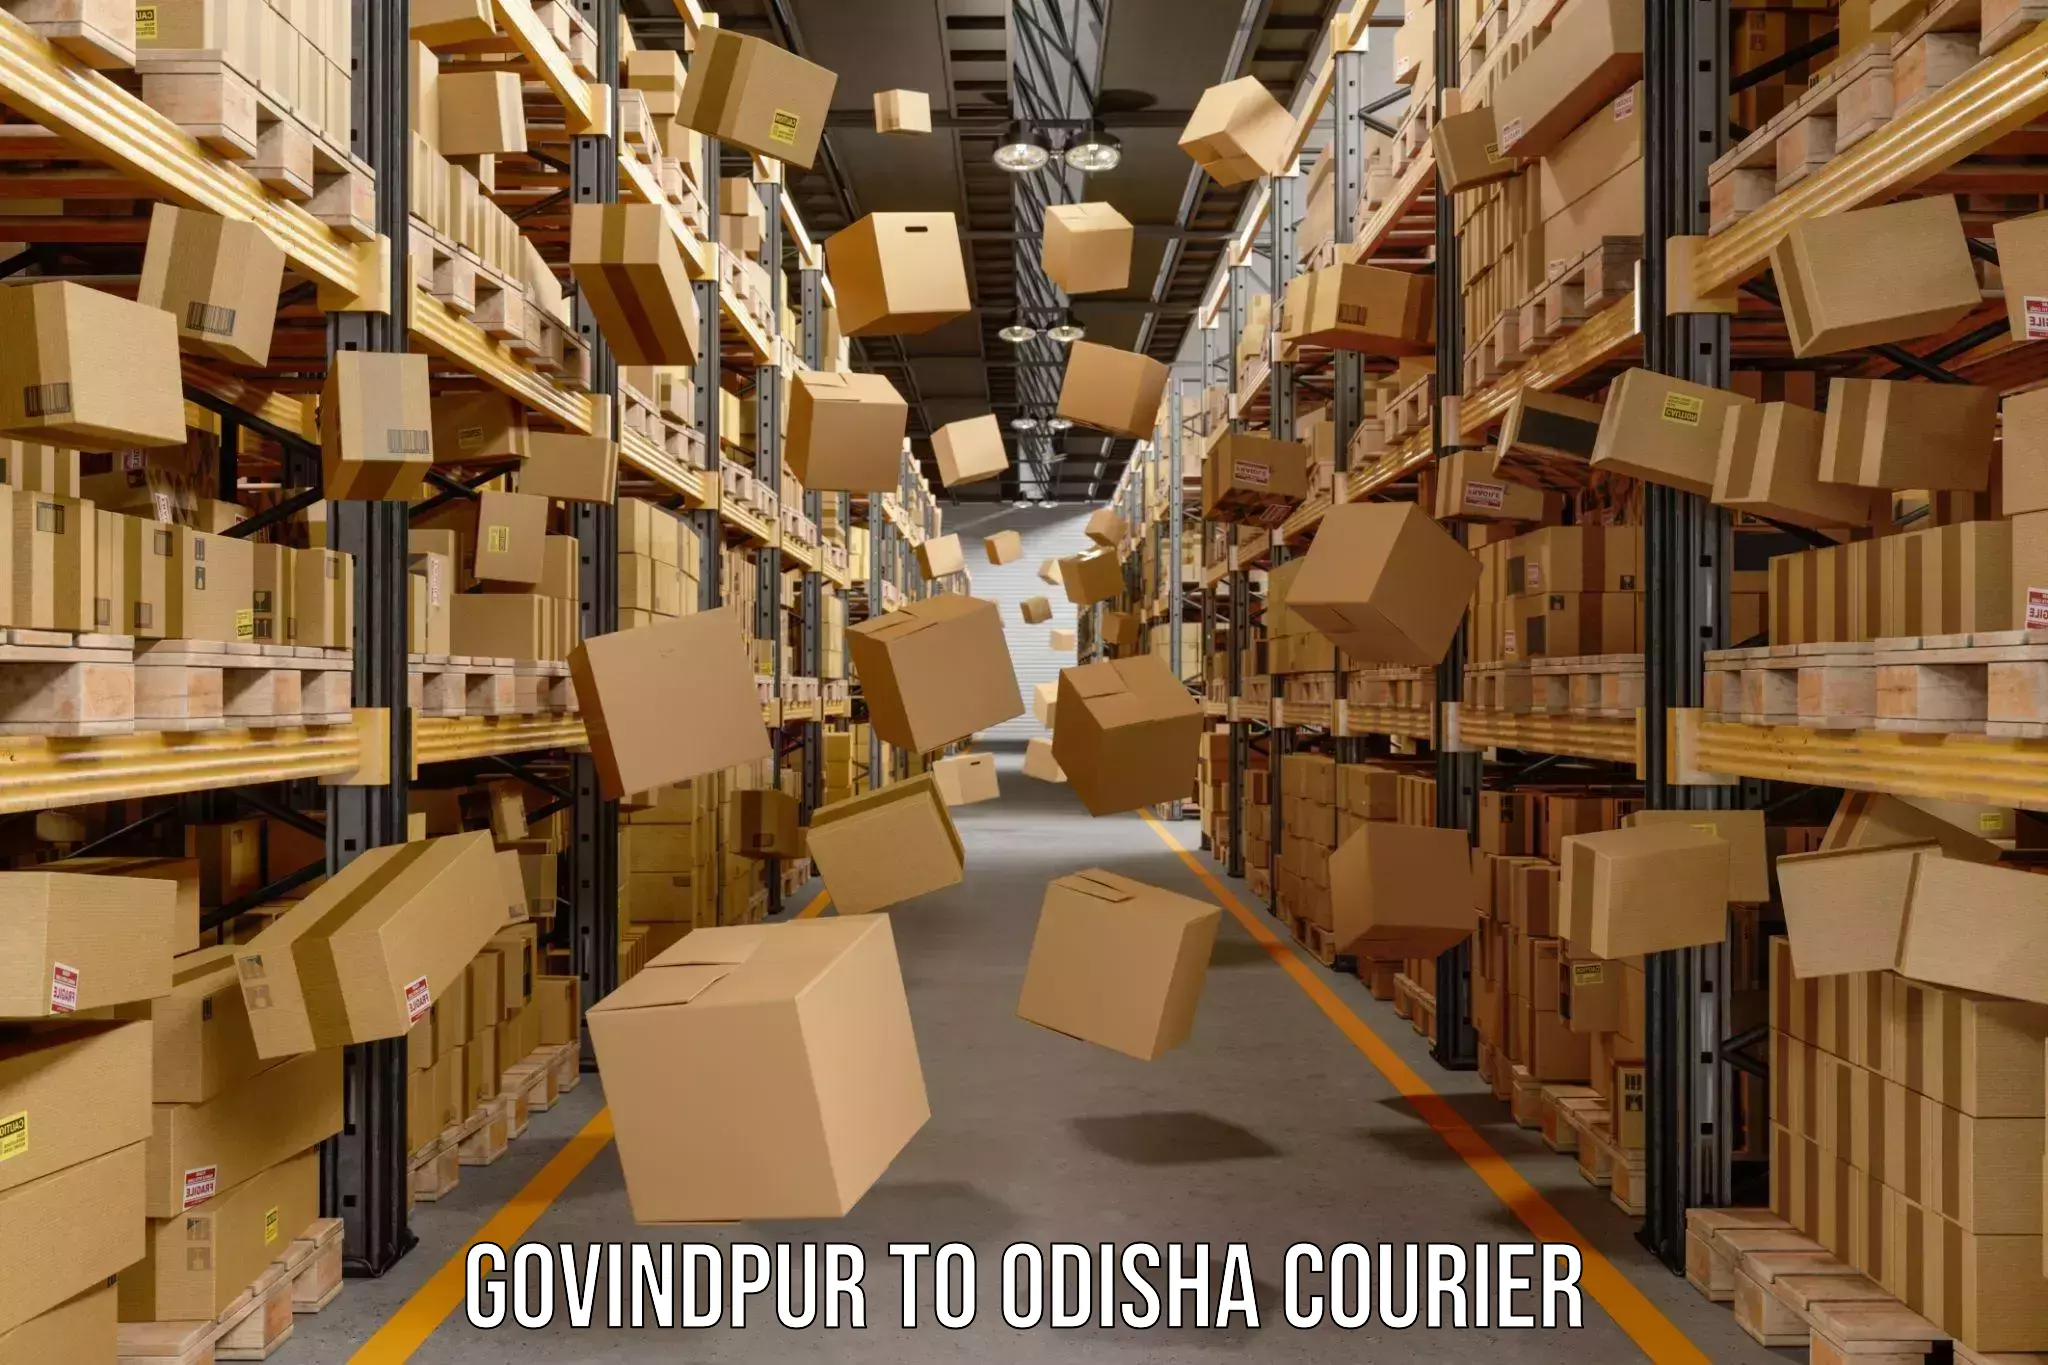 High-capacity parcel service Govindpur to Odisha